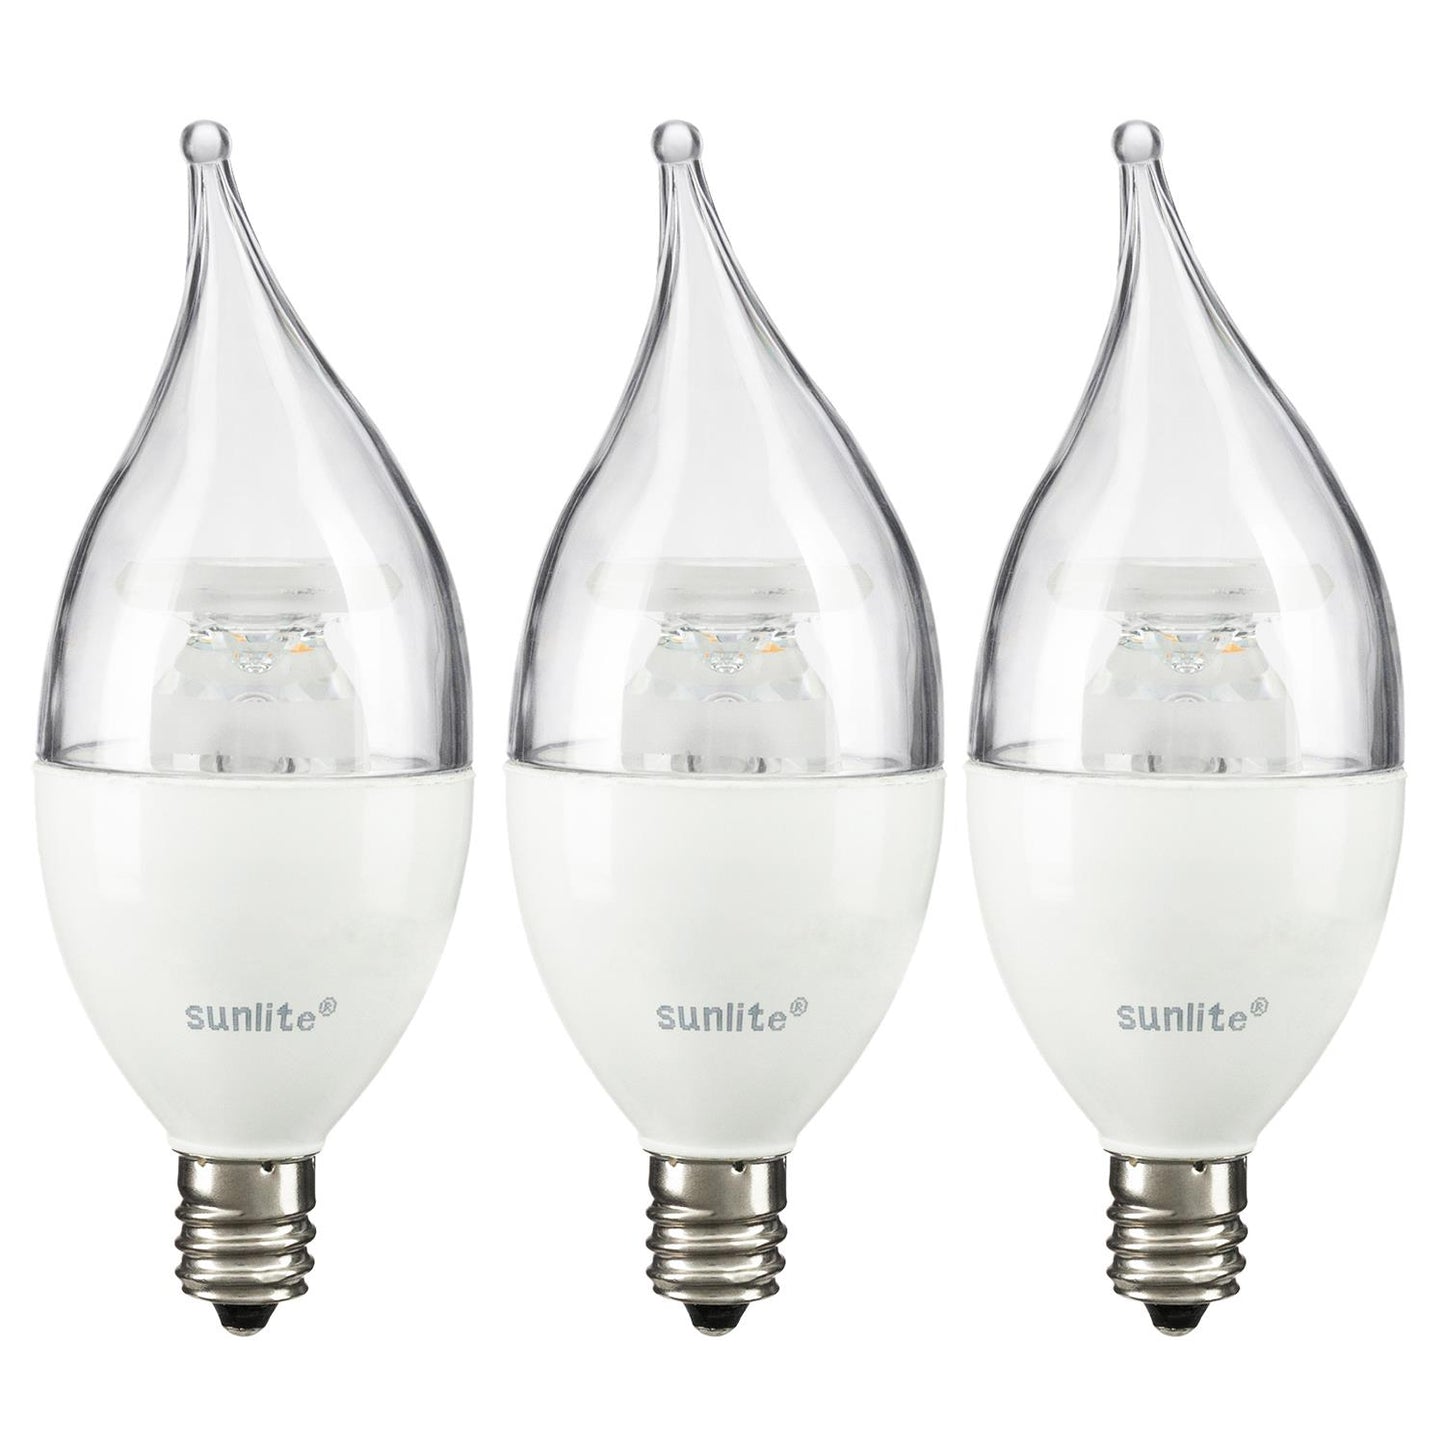 Sunlite LED Flame Tip Chandelier 7W (60W Equivalent) Light Bulbs, Candelabra (E12) Base, 2700K Warm White